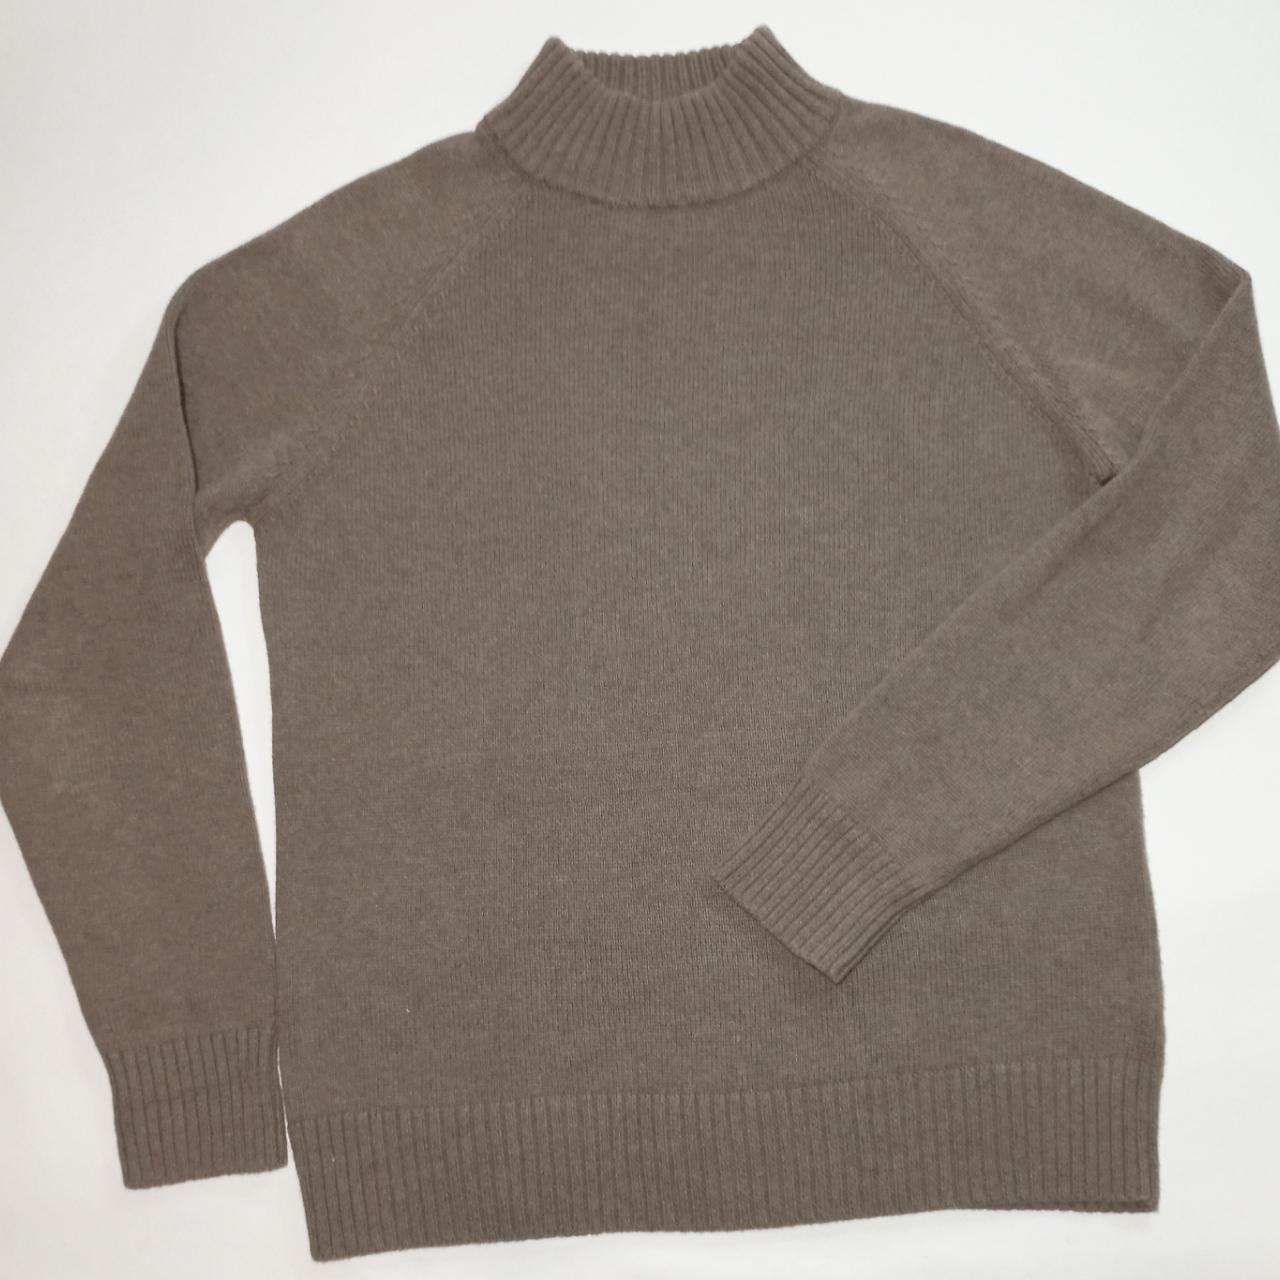 Jeanne Pierre Mock Neck Long Sleeve Sweater Brown... - Depop